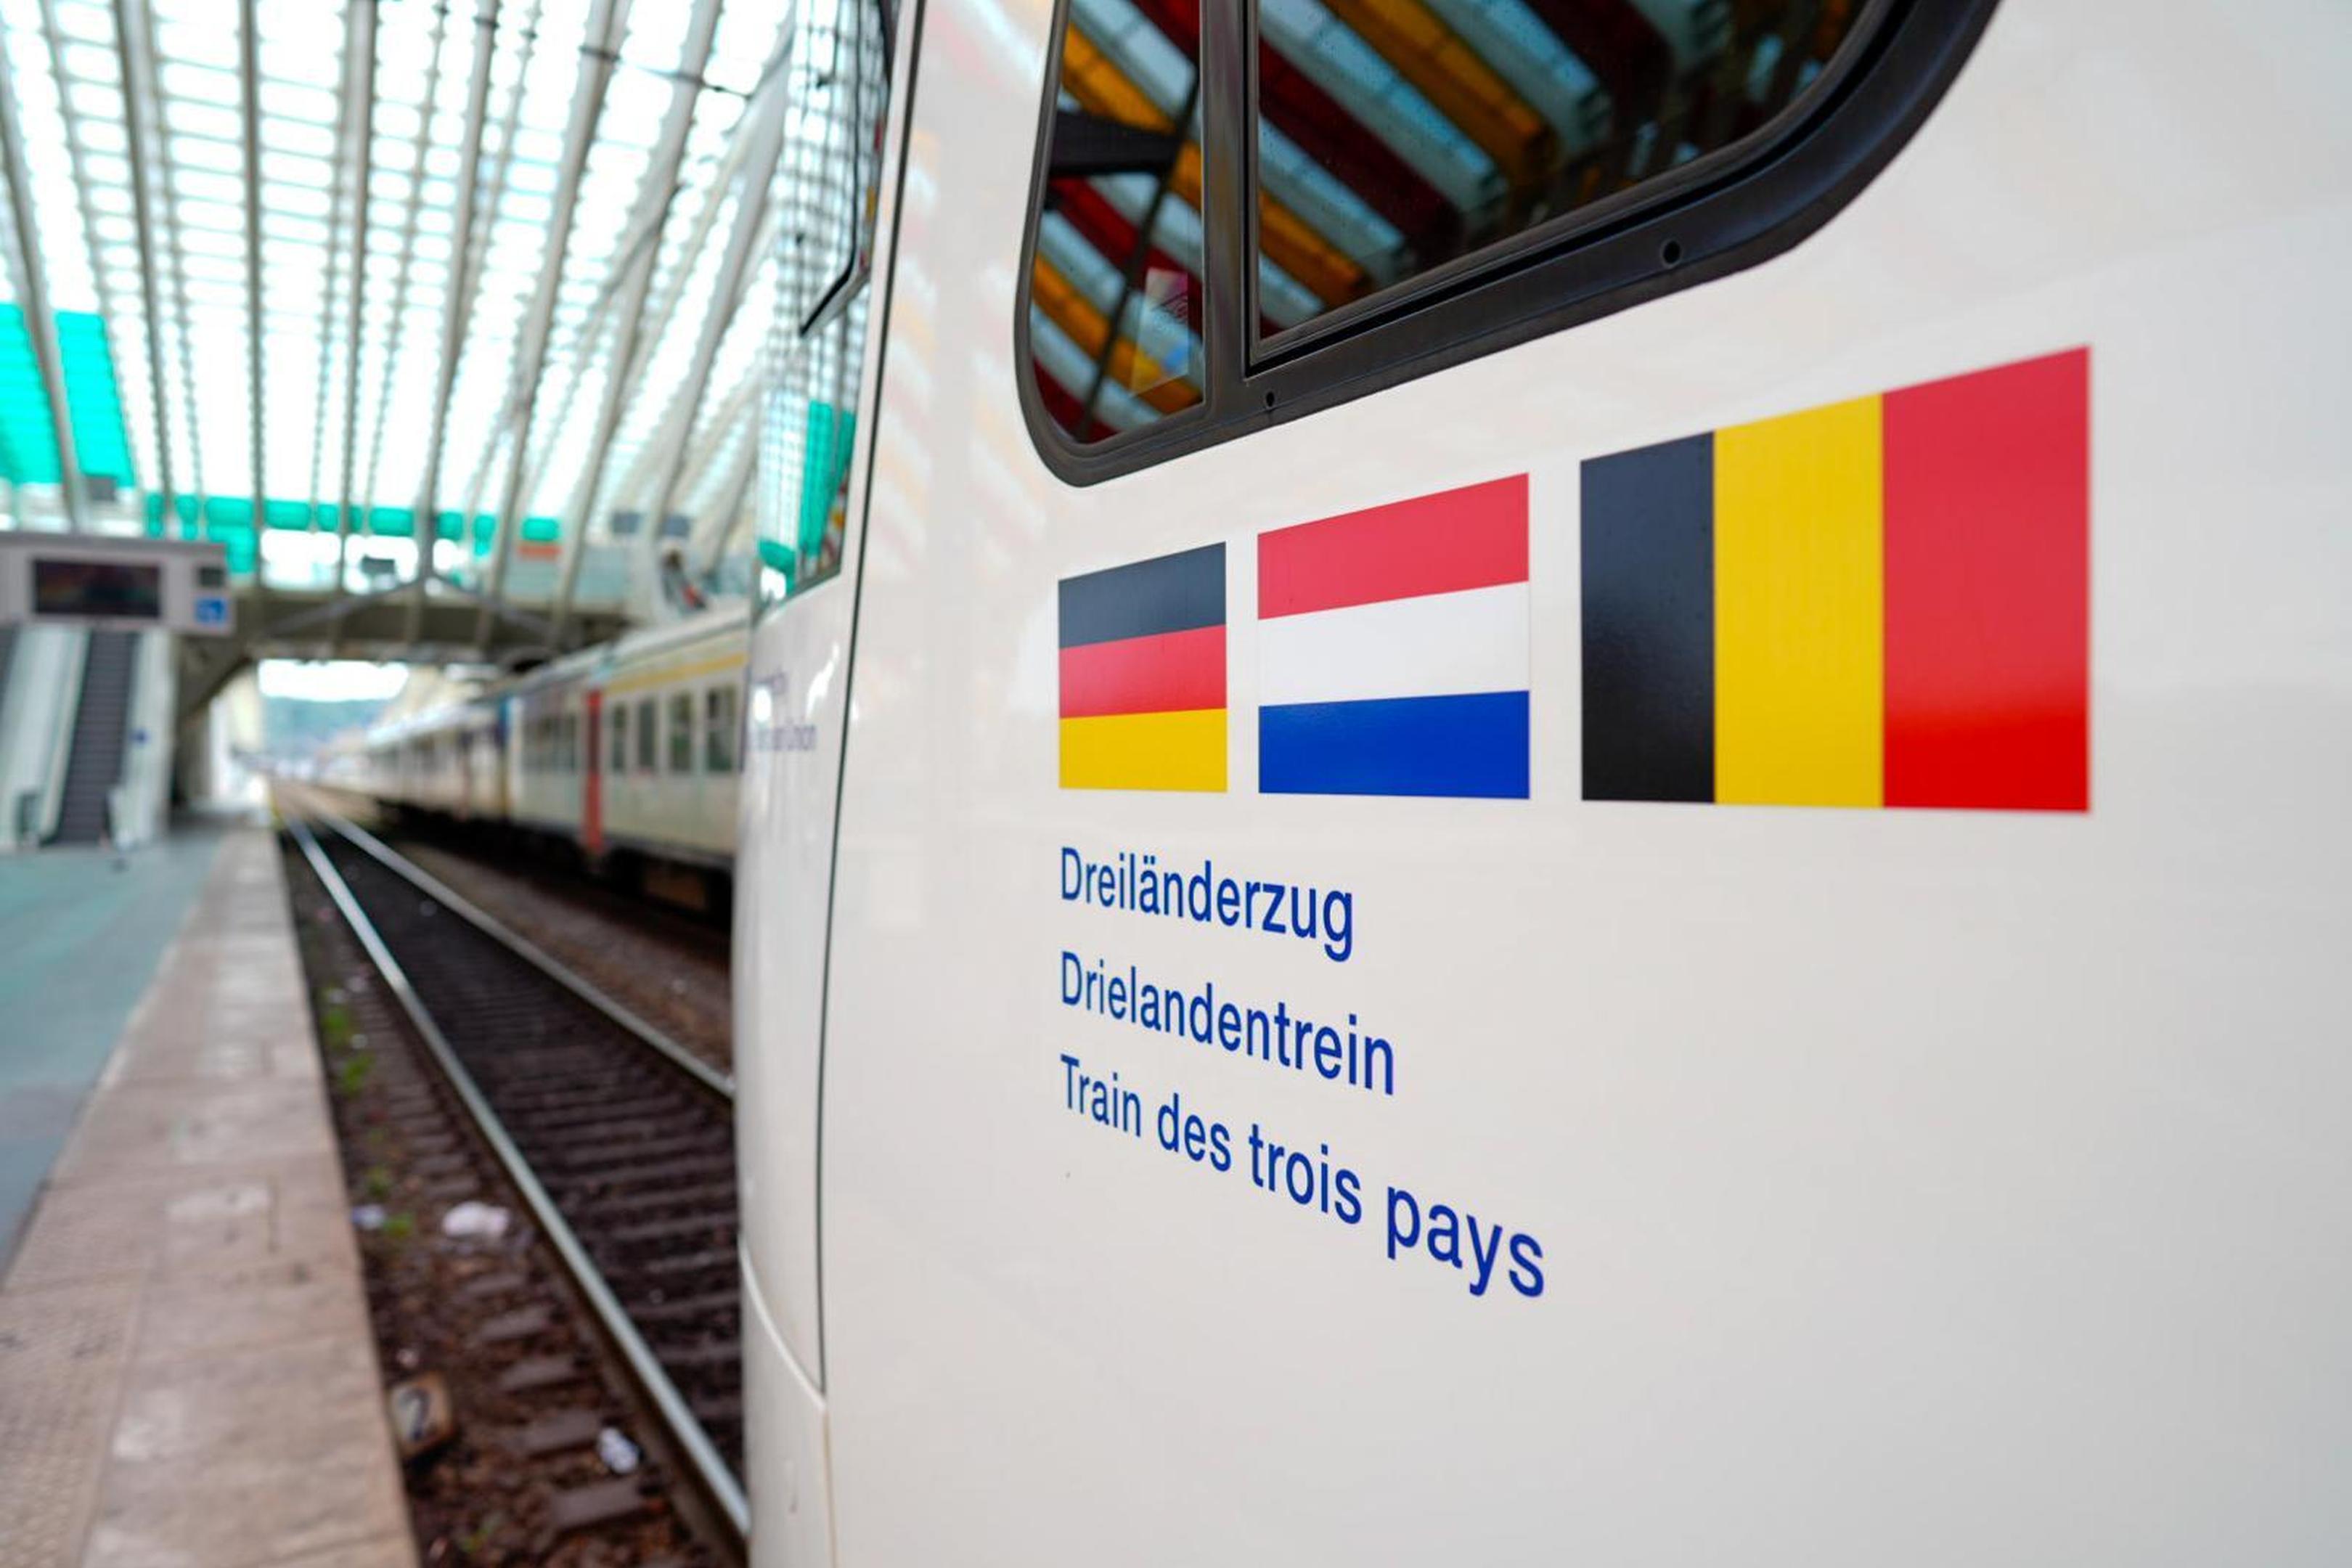 An den drei Nationalflaggen ist er erkennbar: Der Dreiländerzug RE18, der jetzt im Lütticher Bahnhof offiziell vorgestellt wurde.